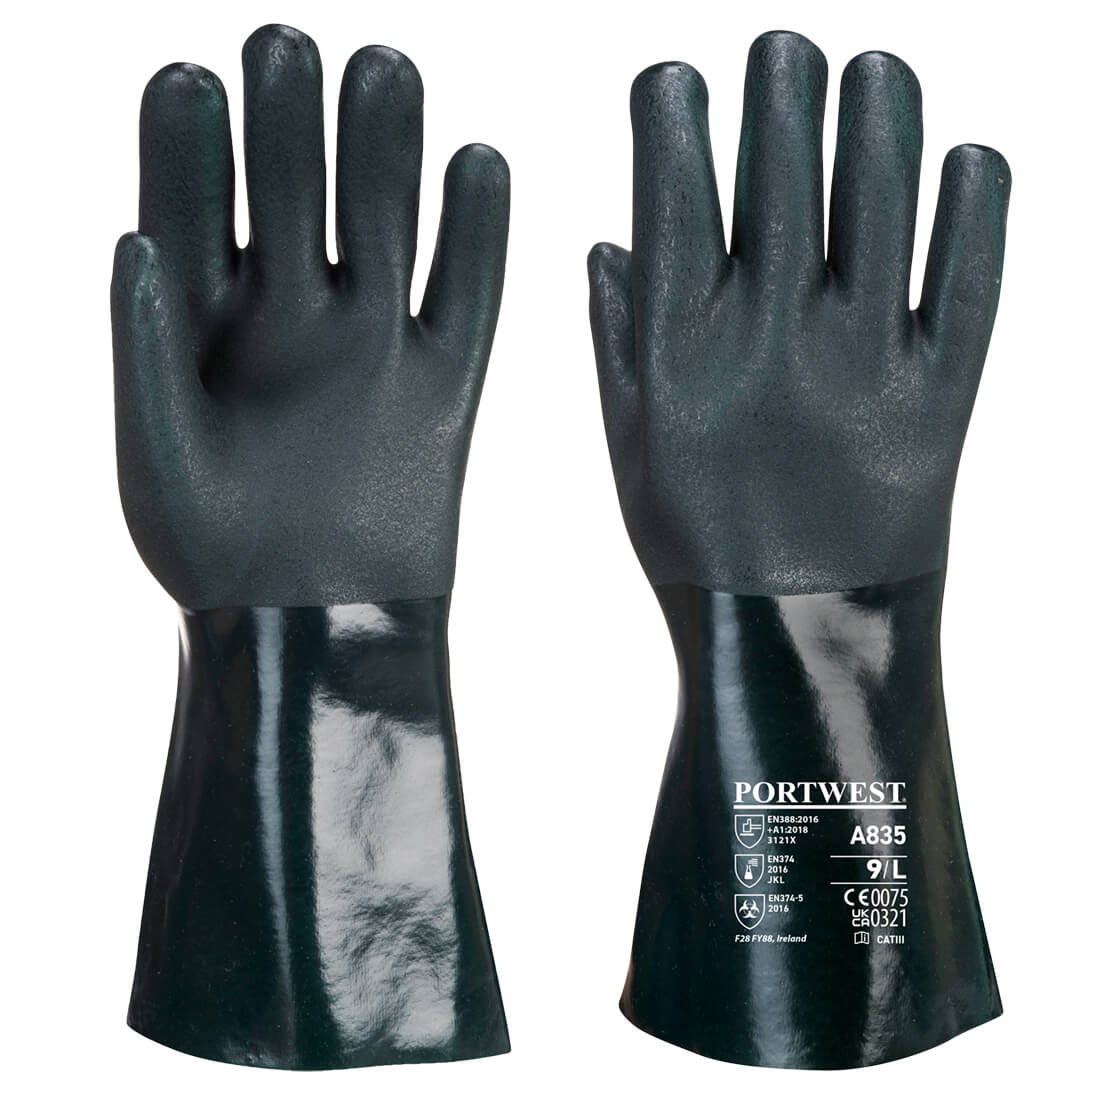 Doppelt Getauchter PVC Chmiekalienschutz-Handschuh Mit 35cm Stulpe